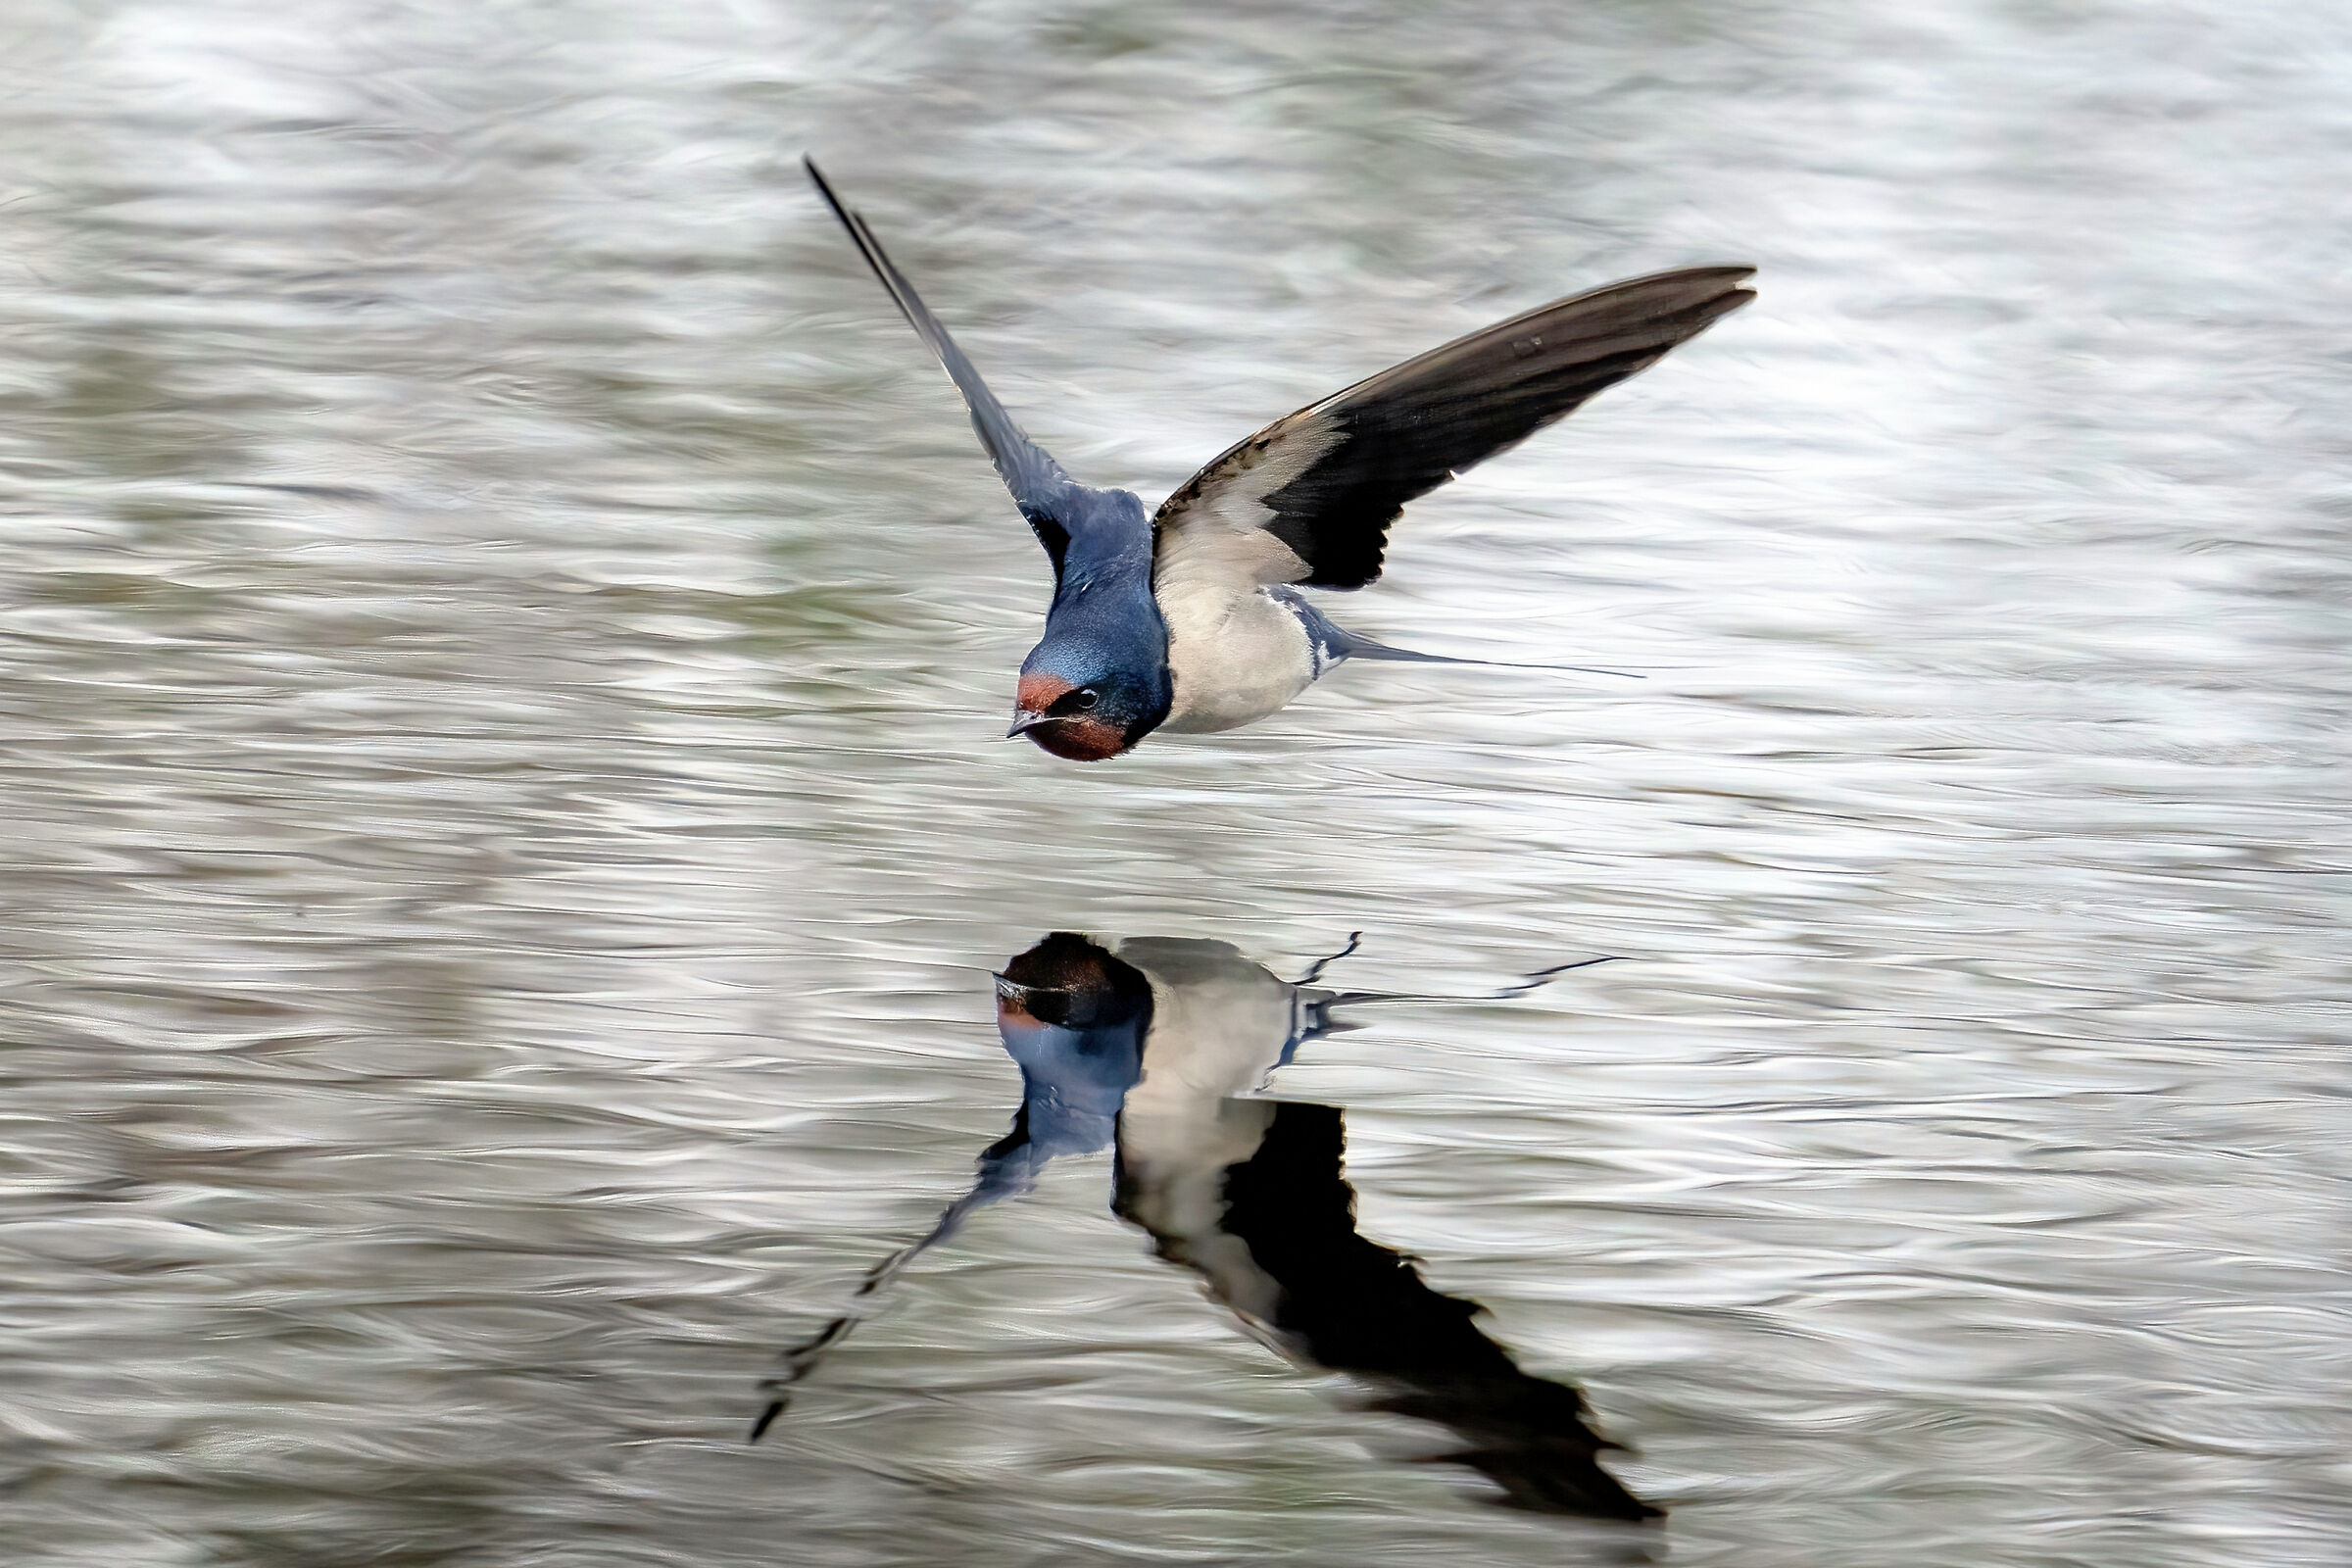 Common swallow (Hirundo rustica)...